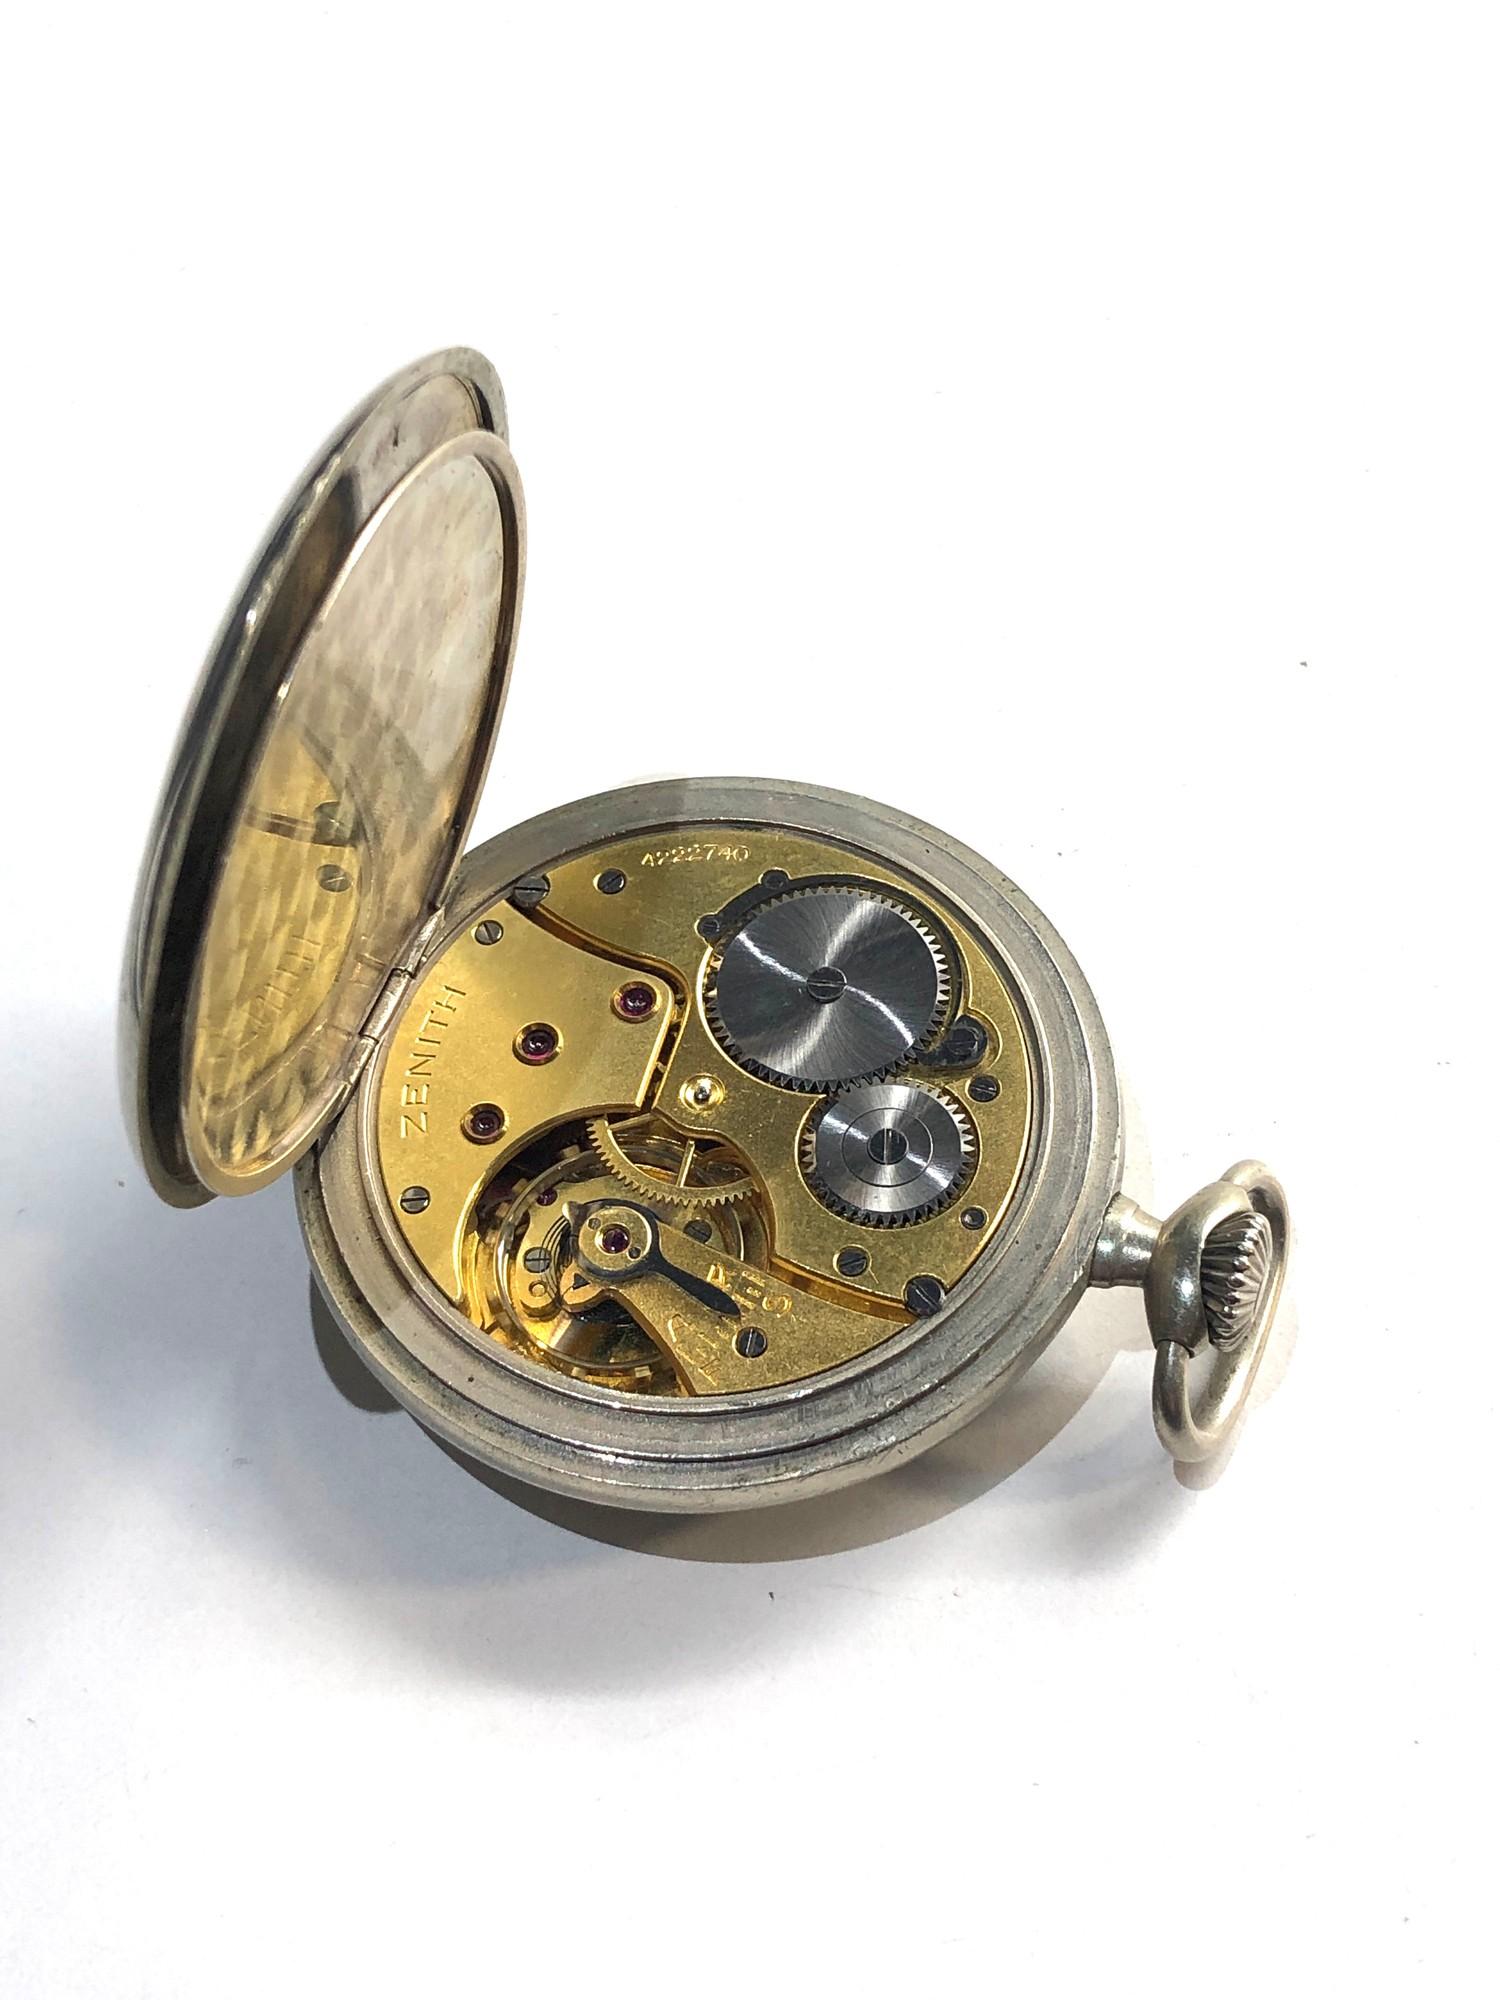 Antique Zenith pocket watch nickel case watch winds and ticks but no warranty given - Bild 3 aus 3